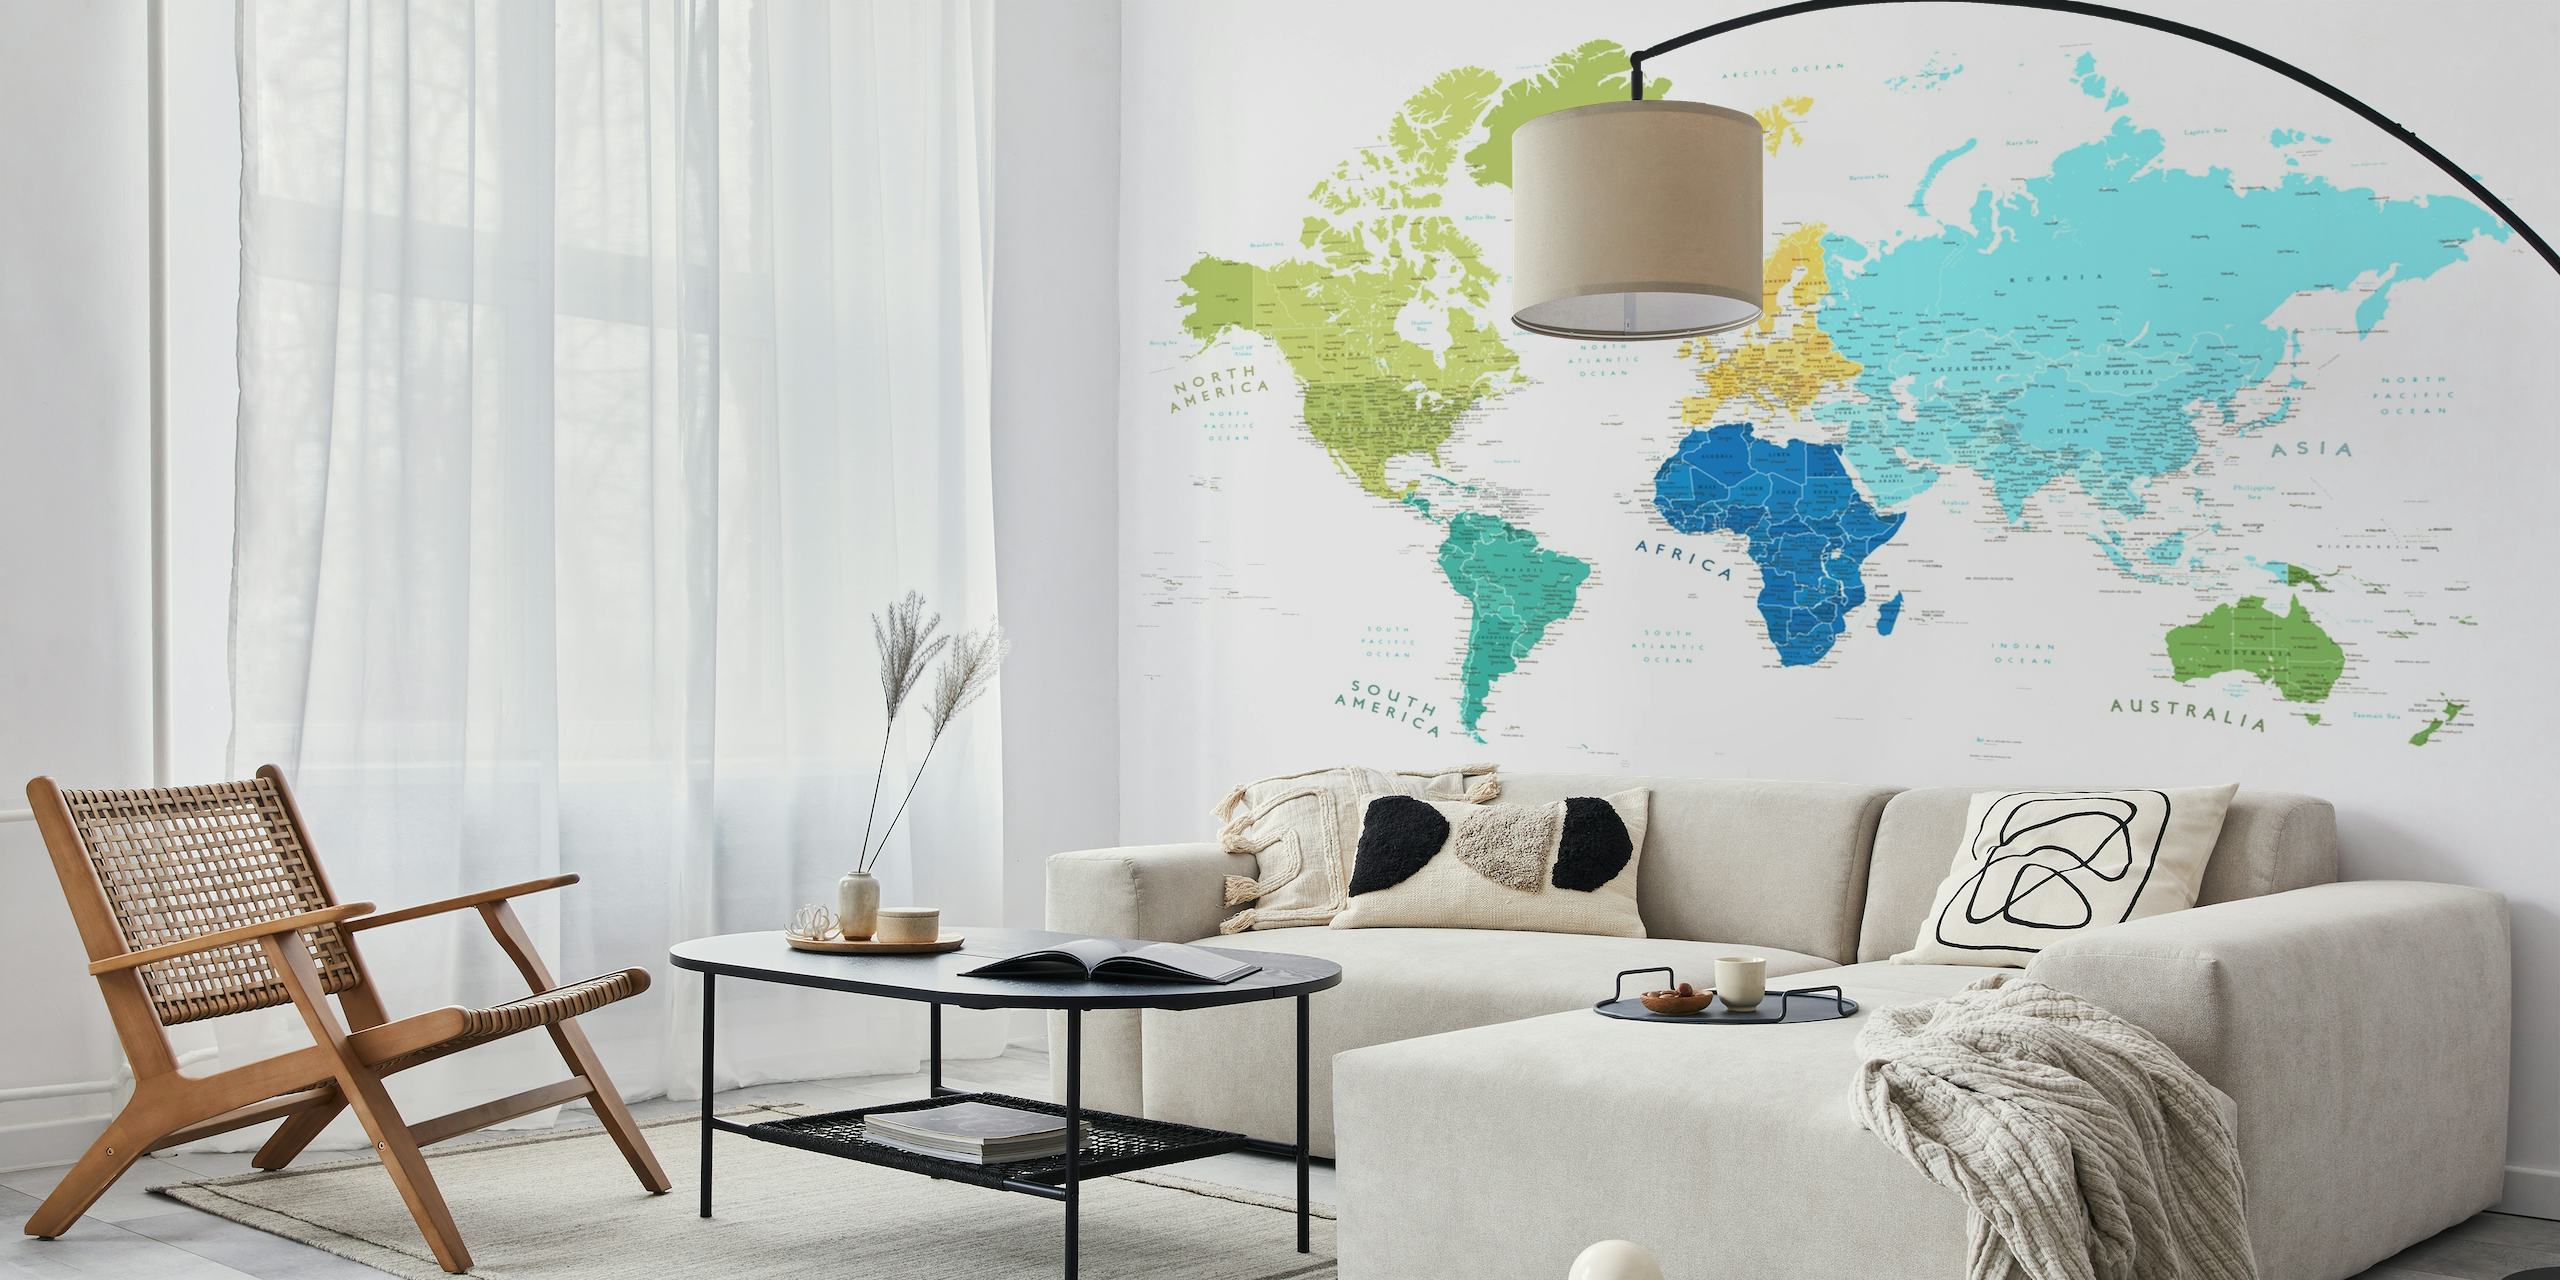 Kleurrijke wereldkaart muurschildering met Antarctica prominent in verschillende kleuren voor elk continent